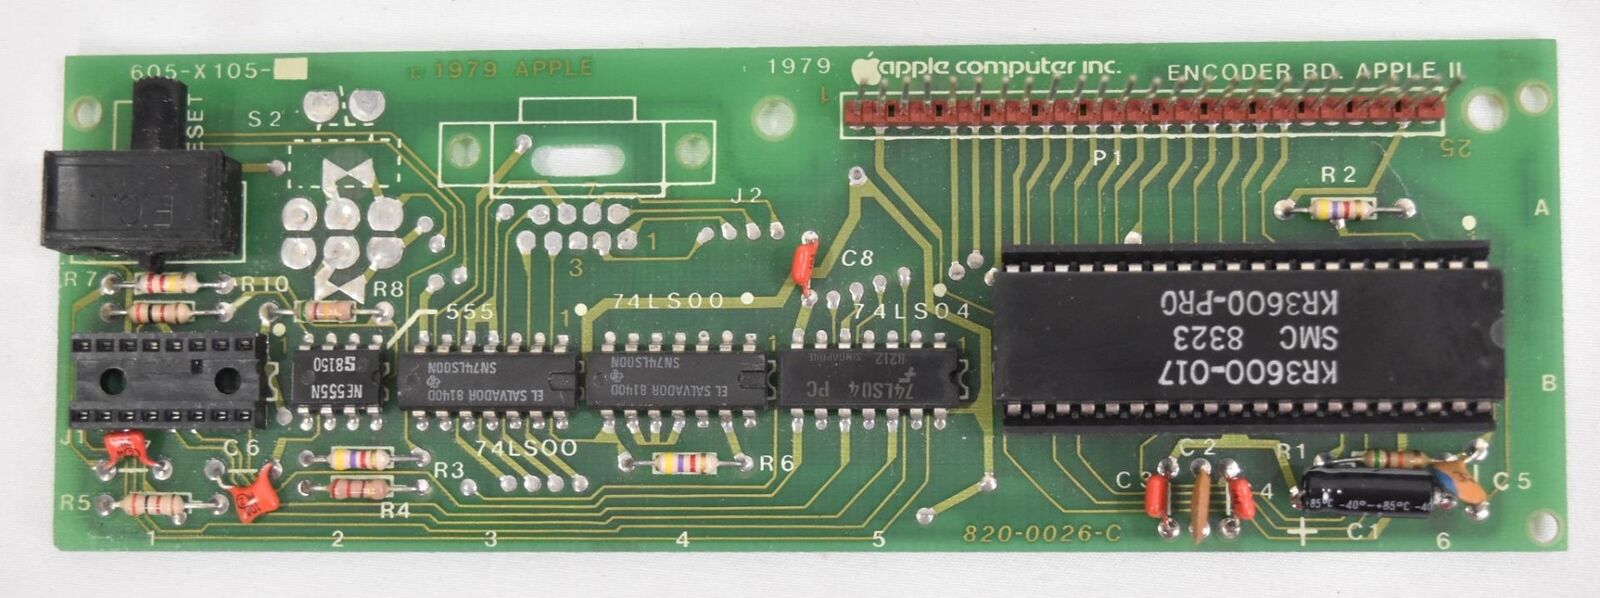 Vintage Apple II Keyboard Encoder 1979 605-X105